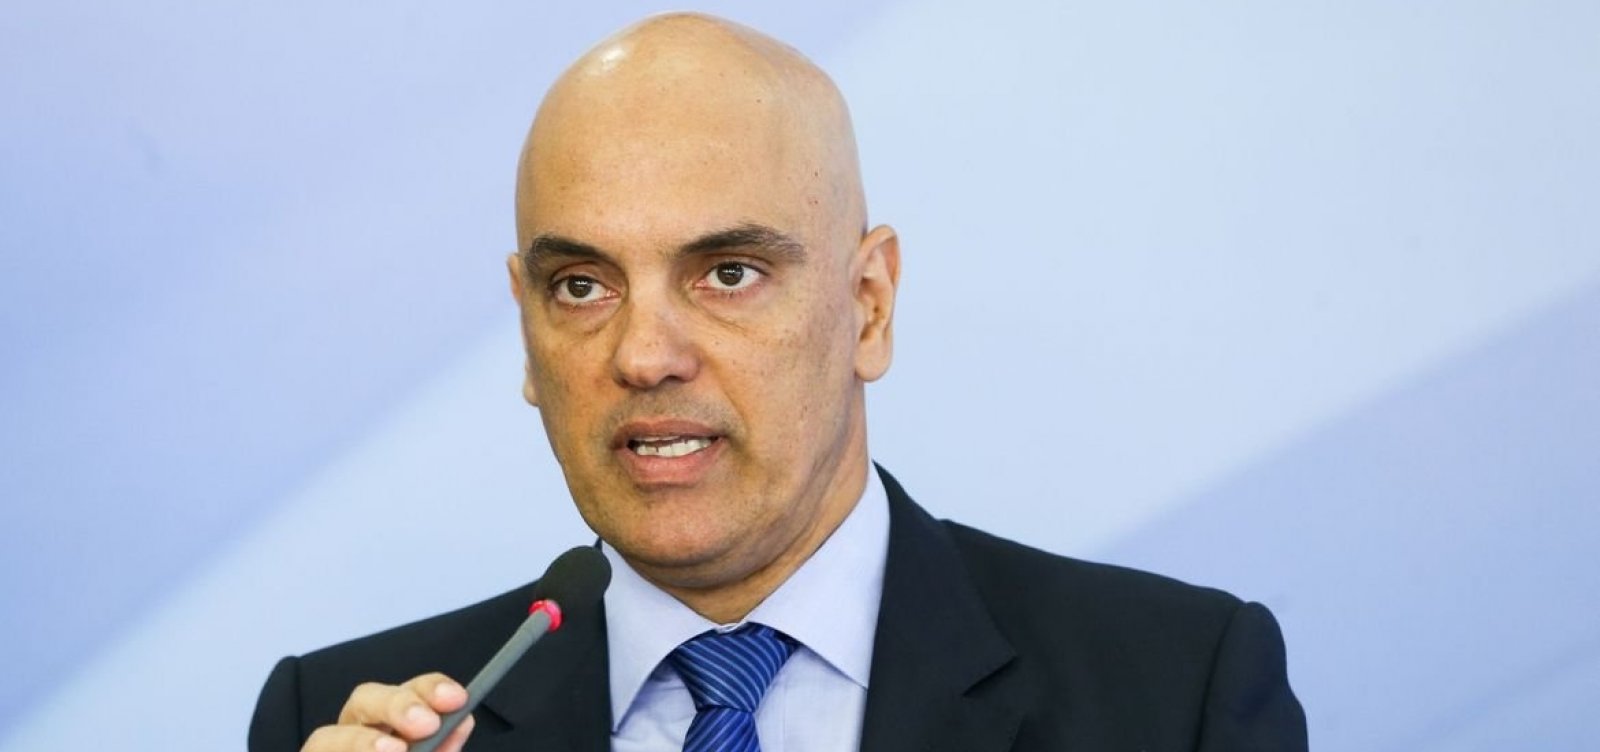 Alexandre de Moraes manda governo retomar divulgação de dados acumulados de coronavírus